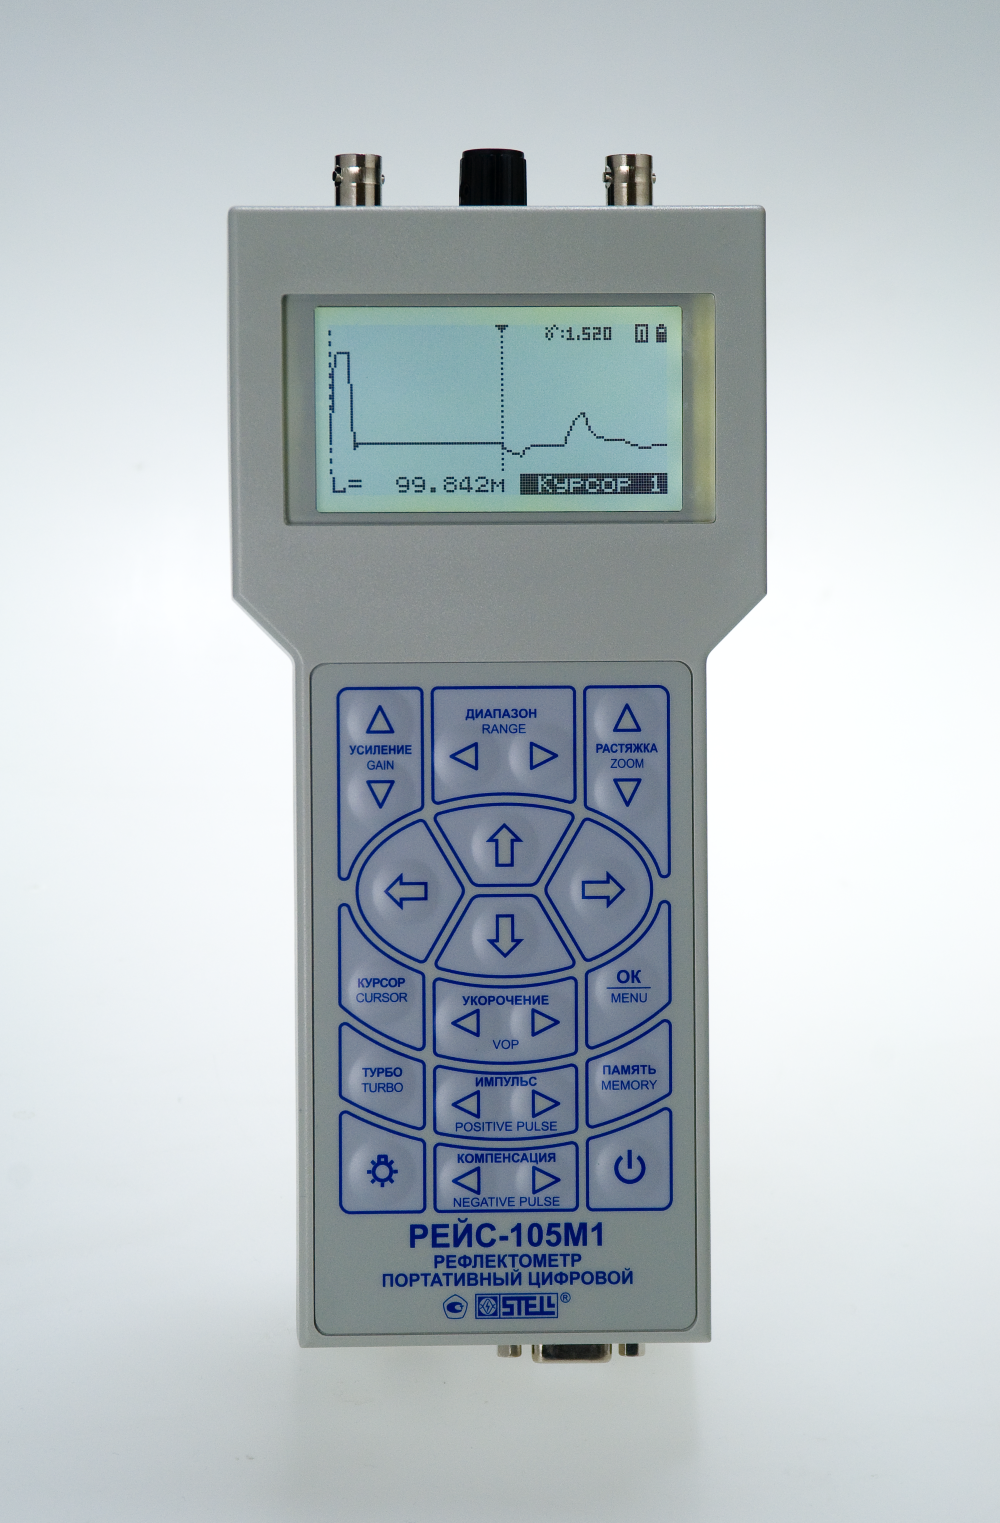 РЕЙС-105М1 — портативный цифровой рефлектометр